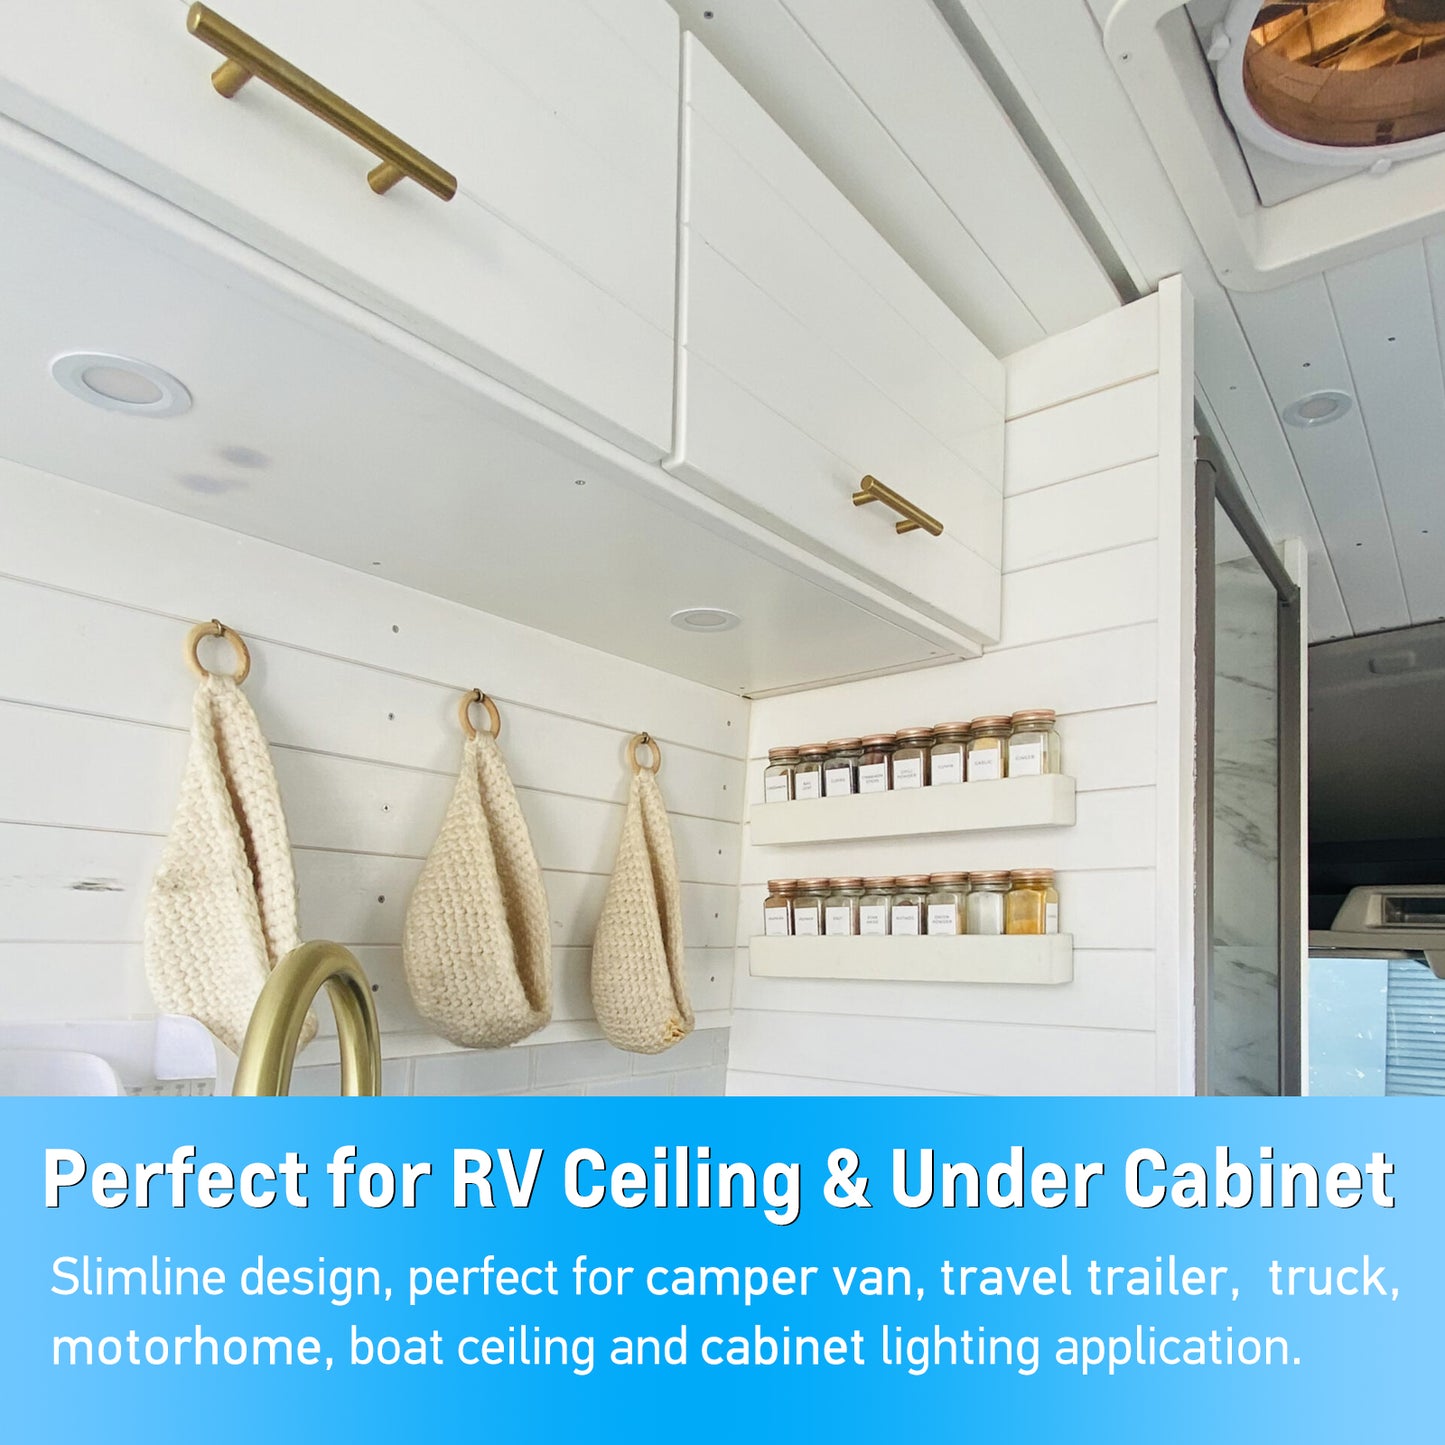 12V LED Puck Light, RV Boat Recessed Mount Ceiling Light for Camper Vans Truck Interior Lighting, 6 Pack White